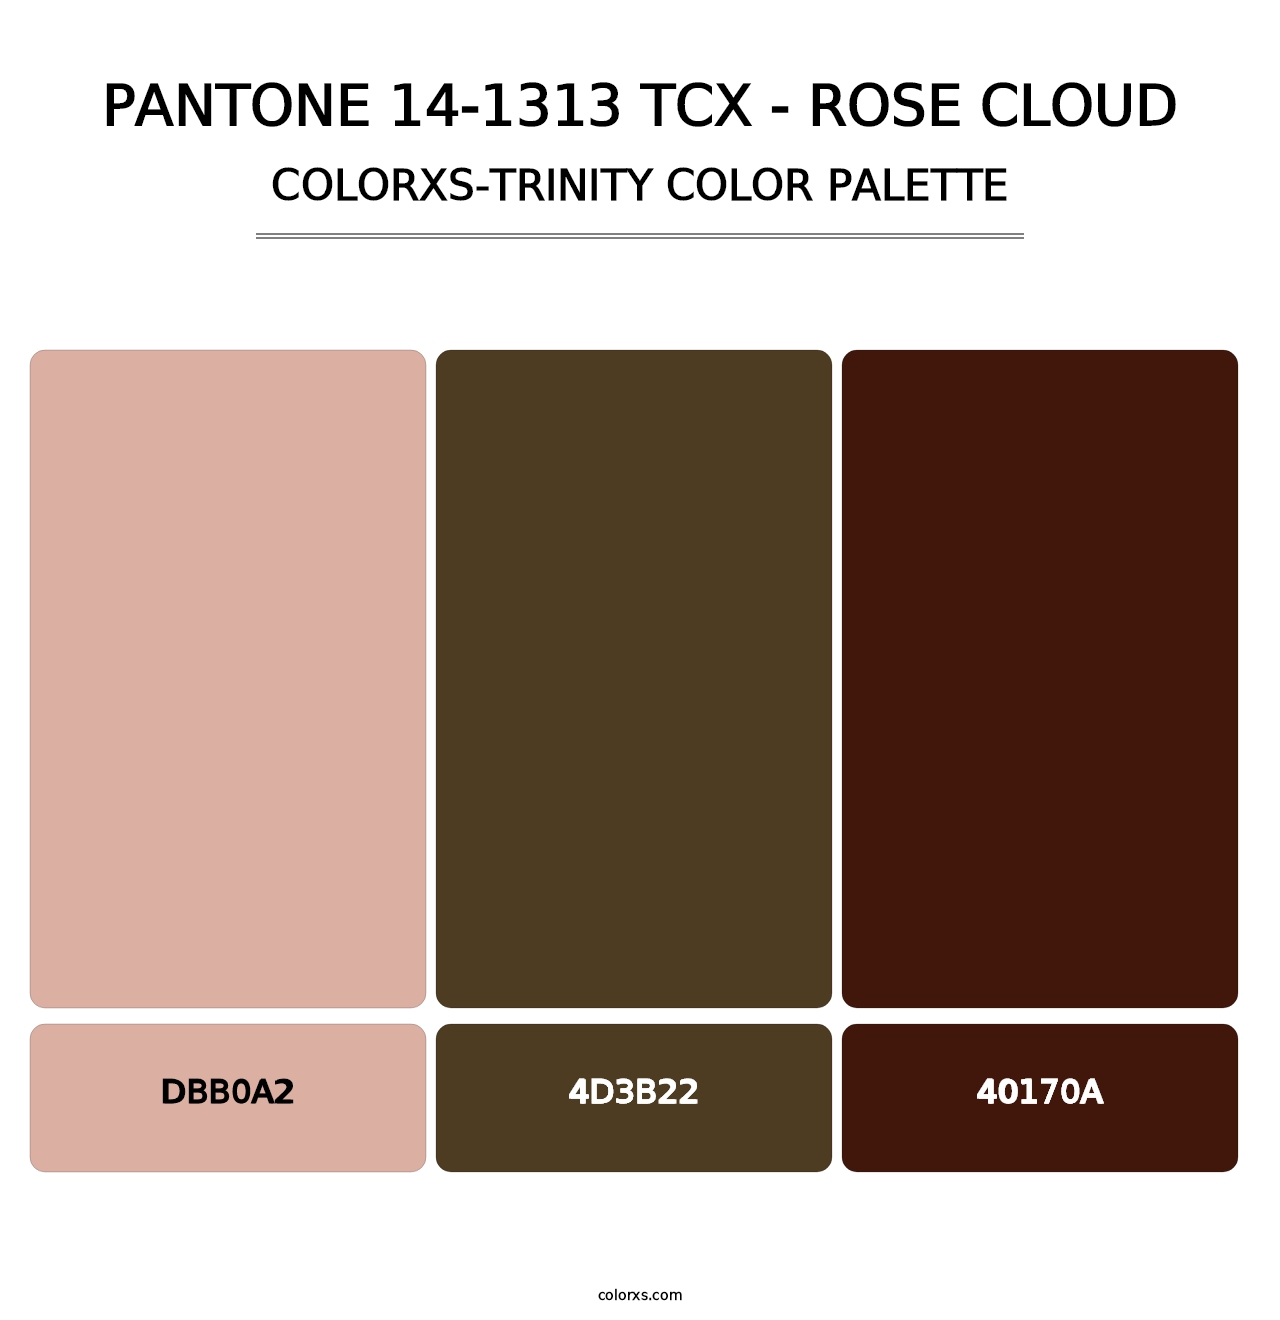 PANTONE 14-1313 TCX - Rose Cloud - Colorxs Trinity Palette